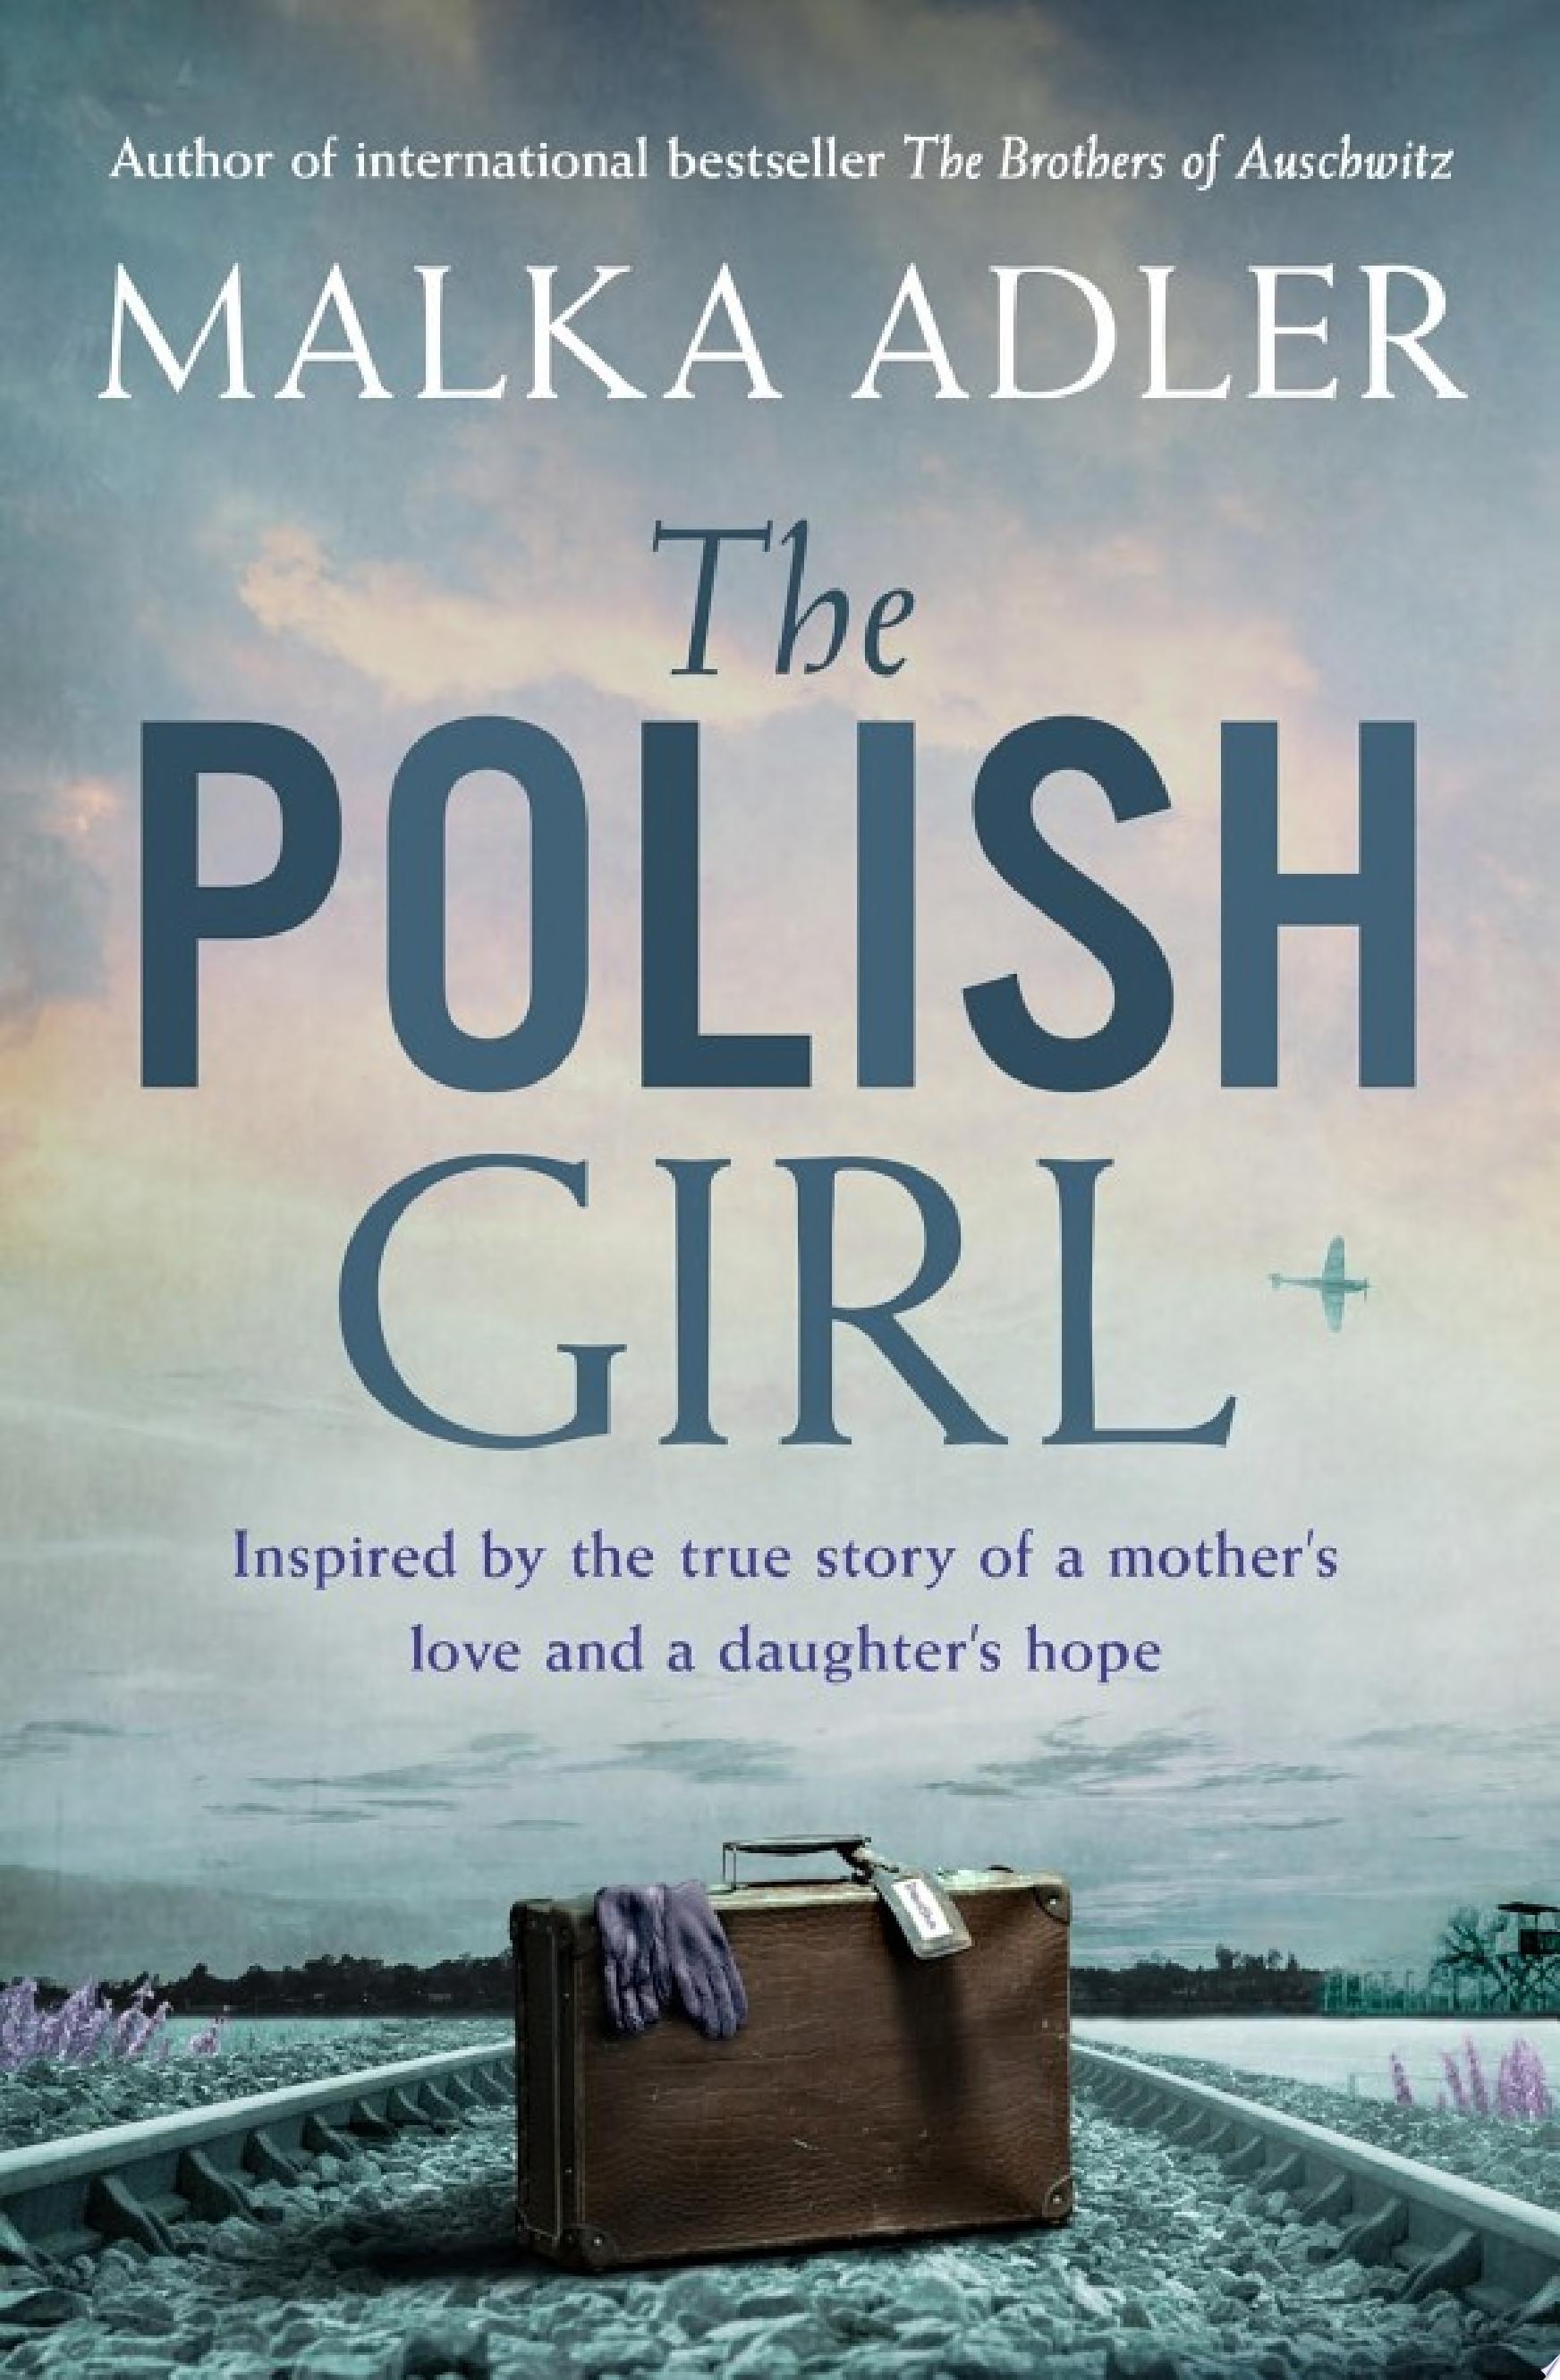 Image for "The Polish Girl"